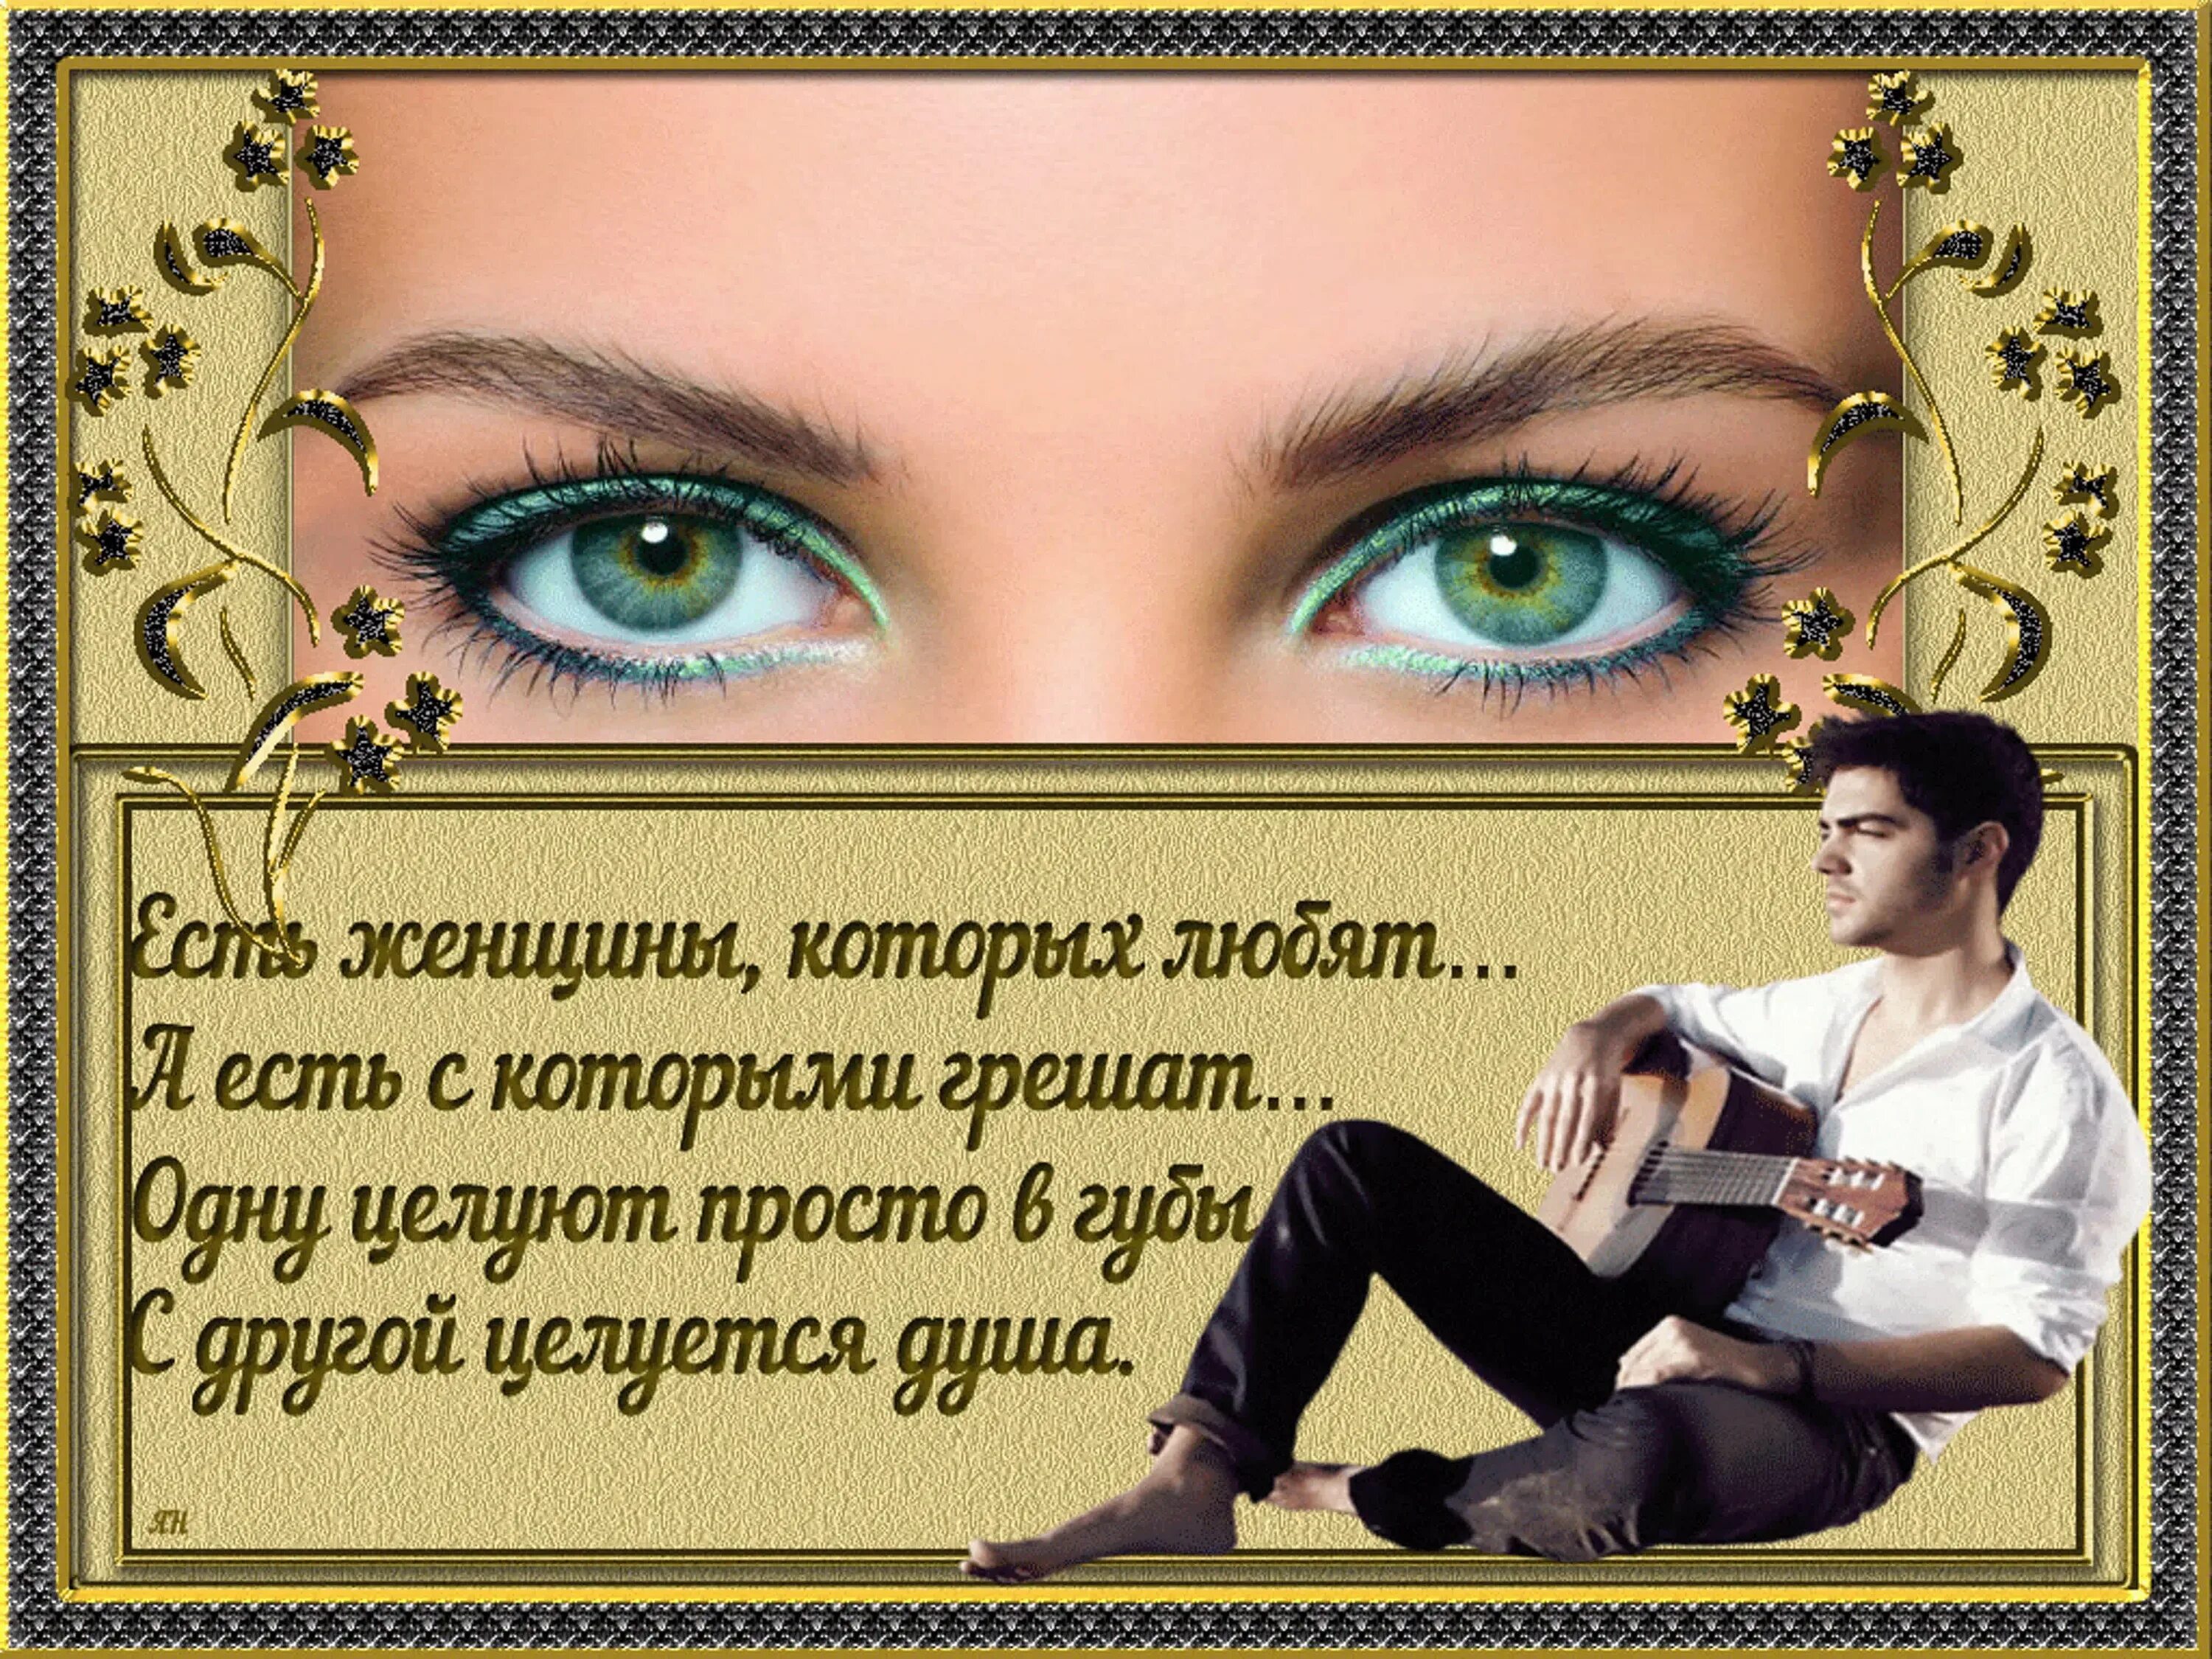 Стих про красивые глаза. Стихи про красивые женские глаза. Стихи про красивые глаза женщины. Стихи про женские глаза. Афоризм глаз